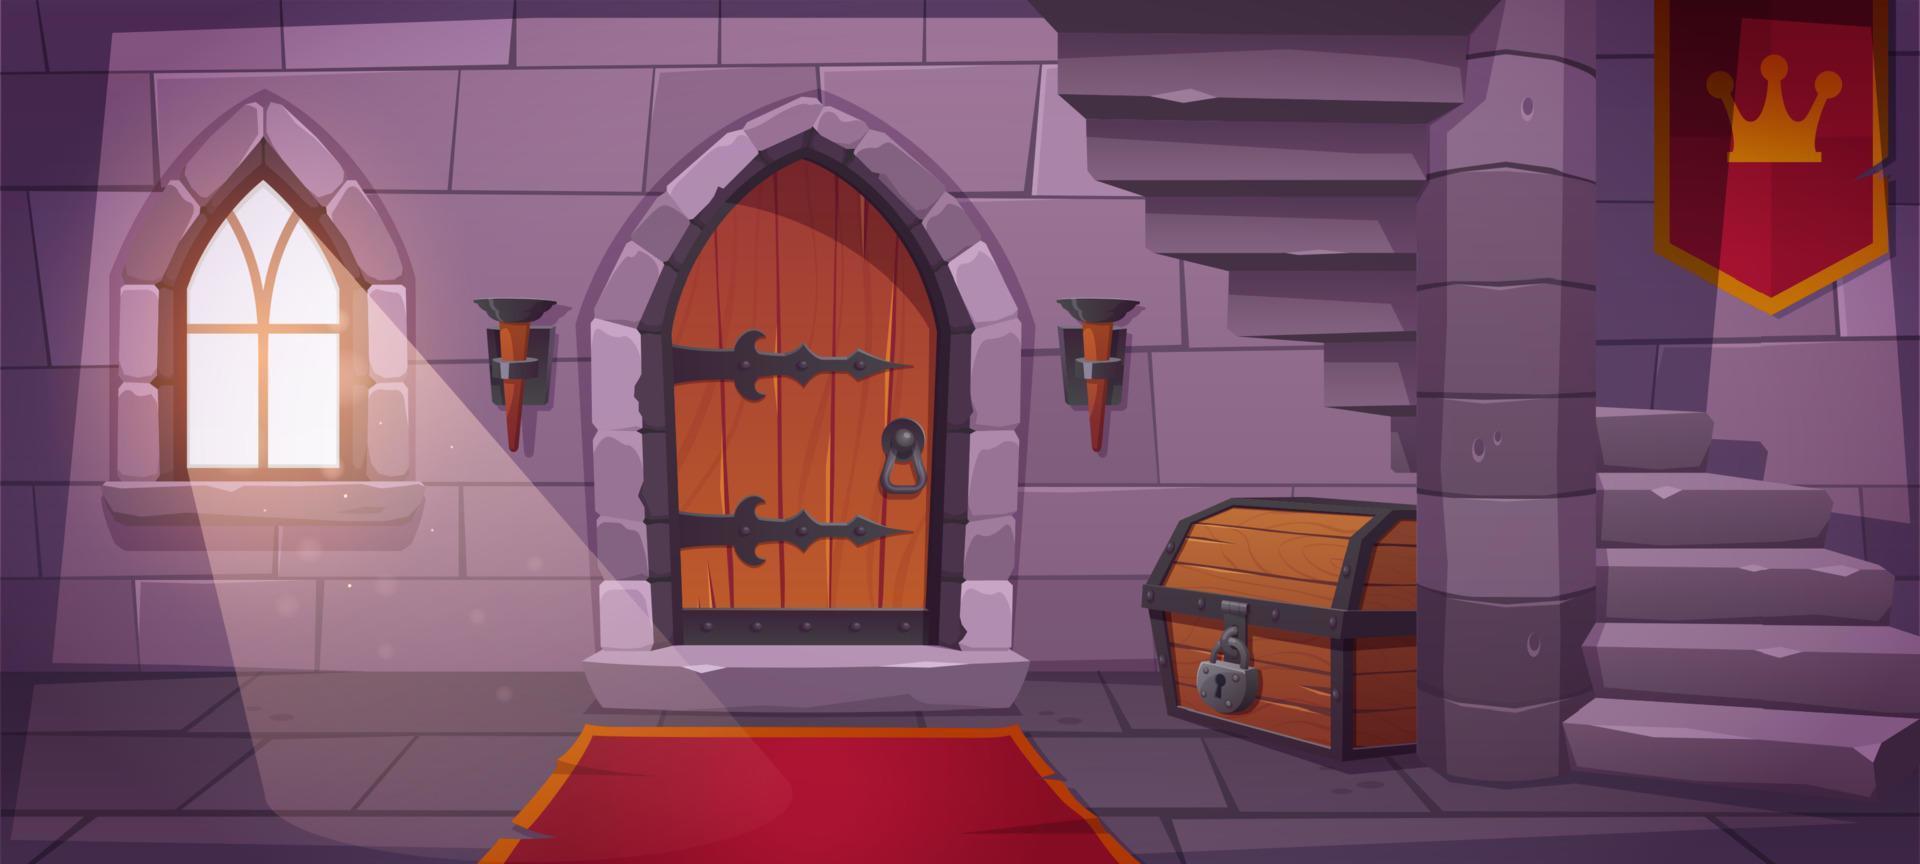 ondergronds kerker in kasteel met houten deur vector